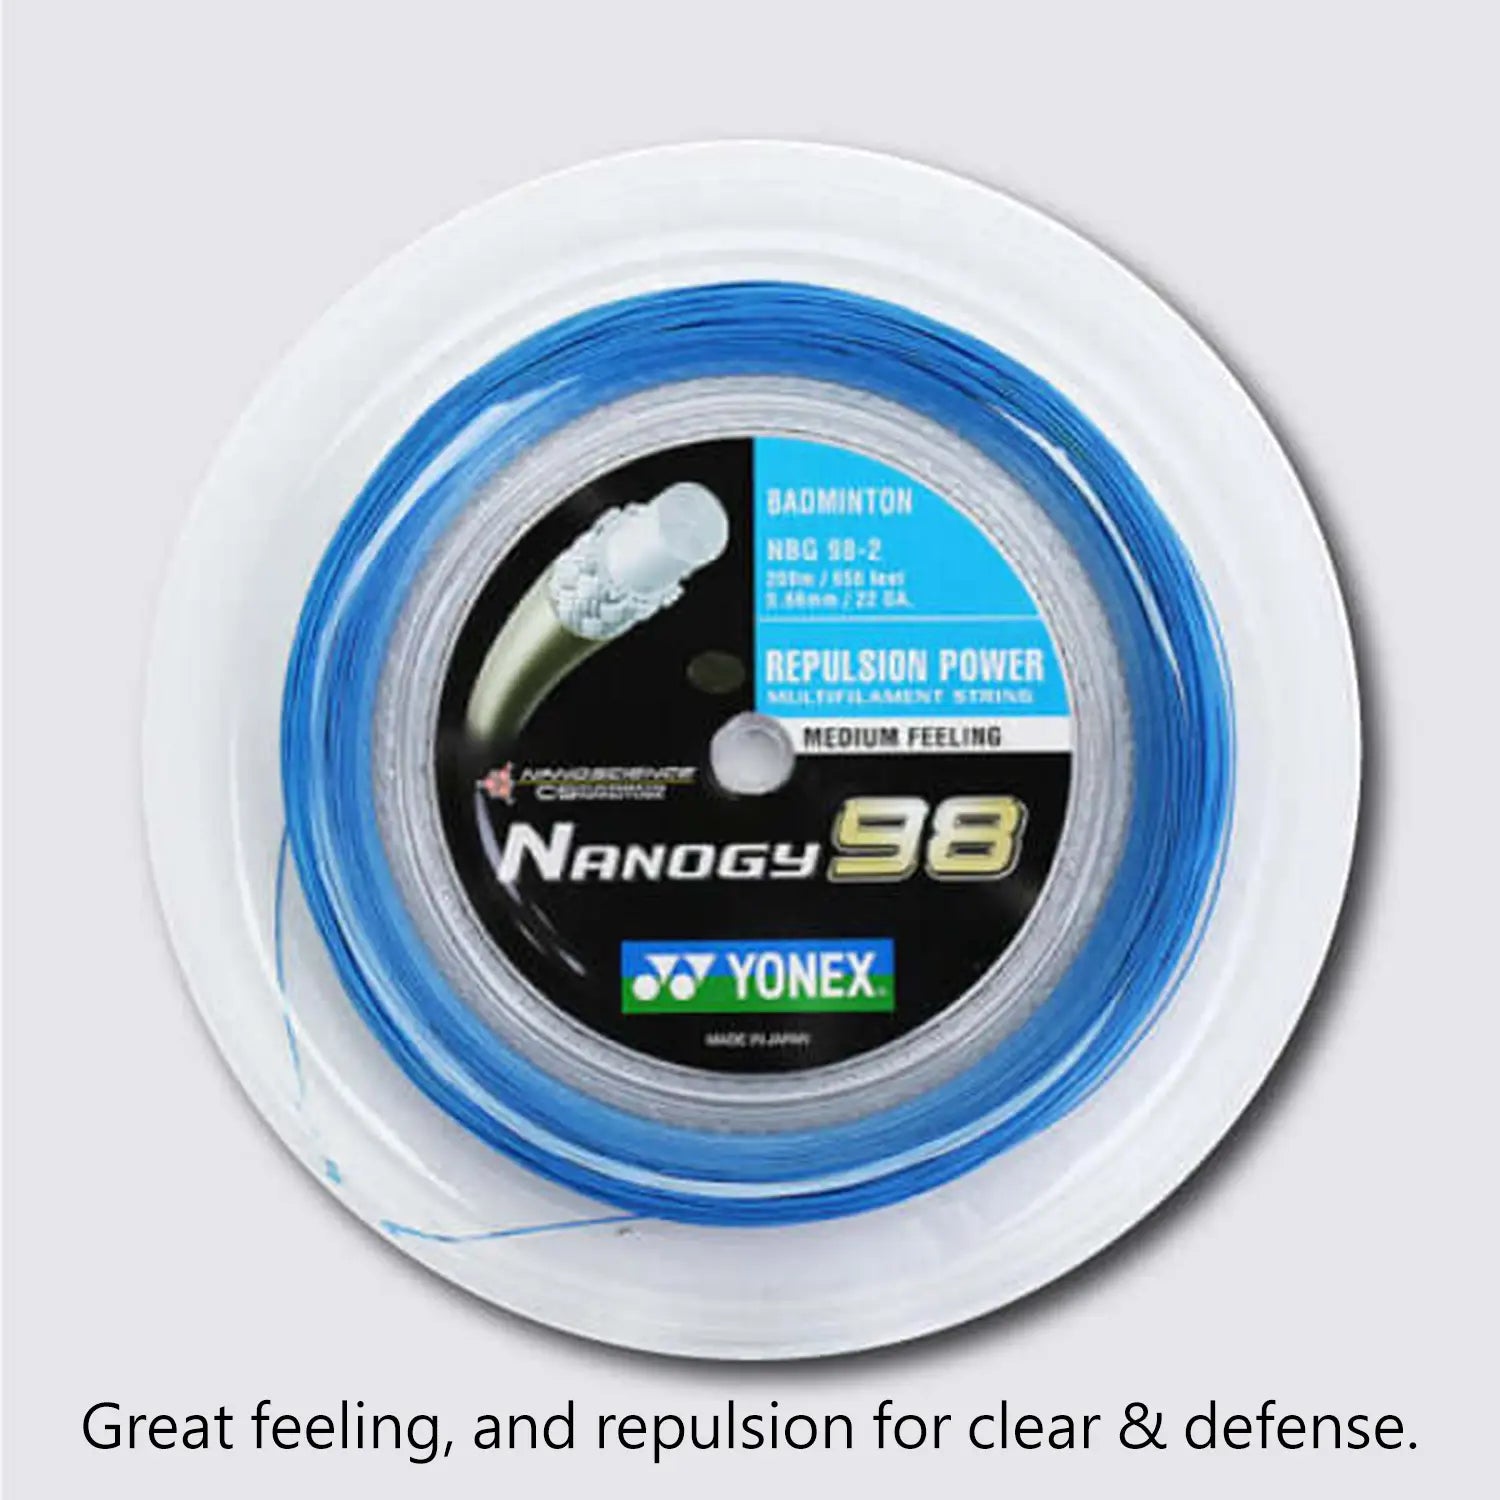 Yonex Nanogy 98 200m Badminton String (Blue) 